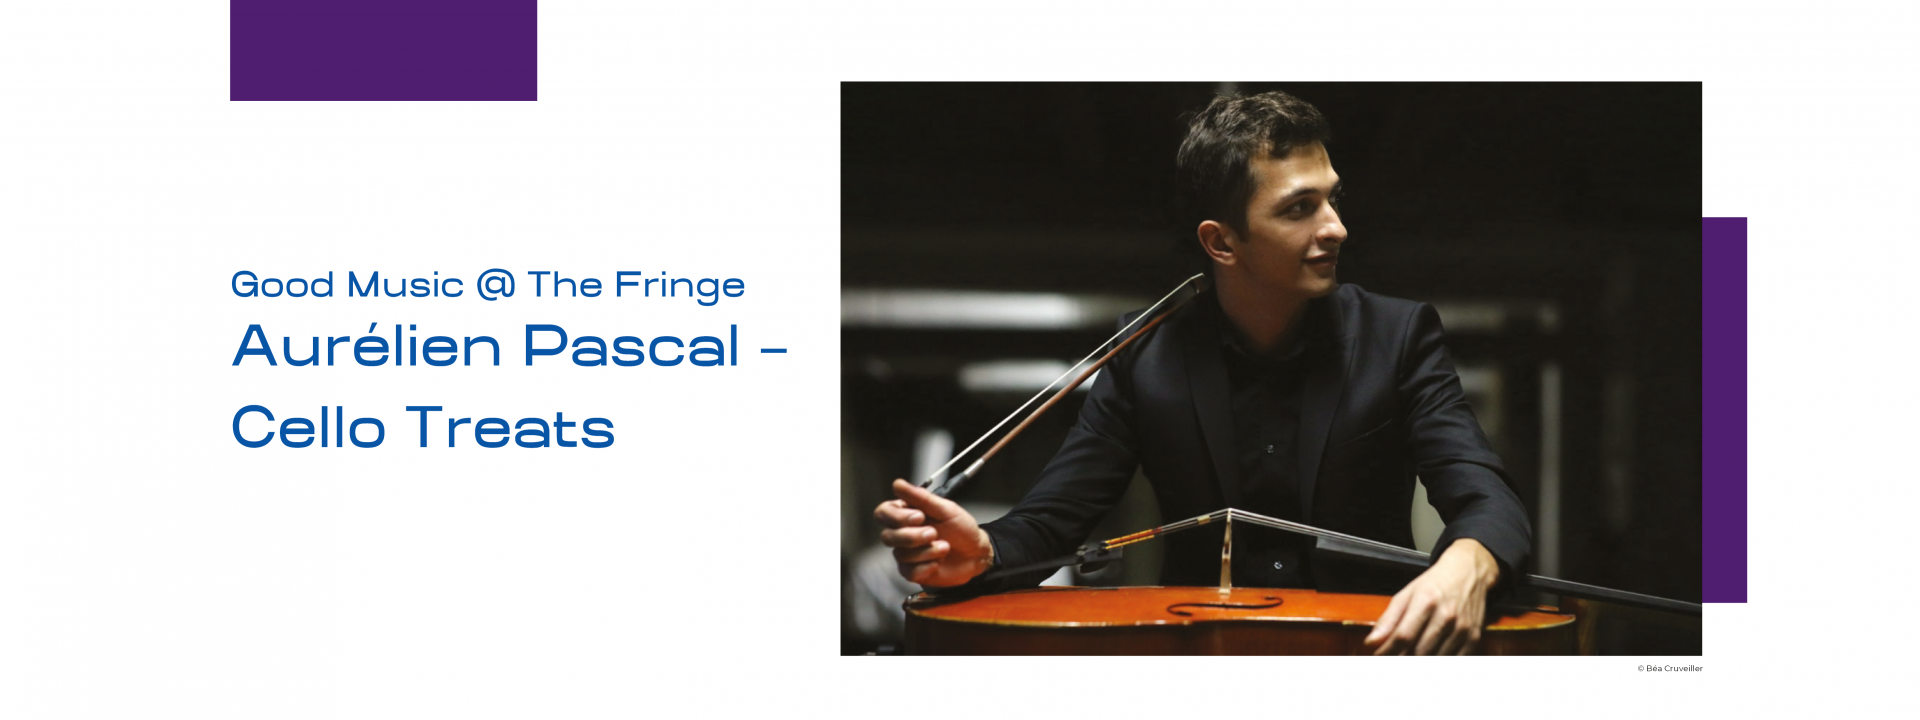 Good Music @ The Fringe - Aurélien Pascal Cello Treats